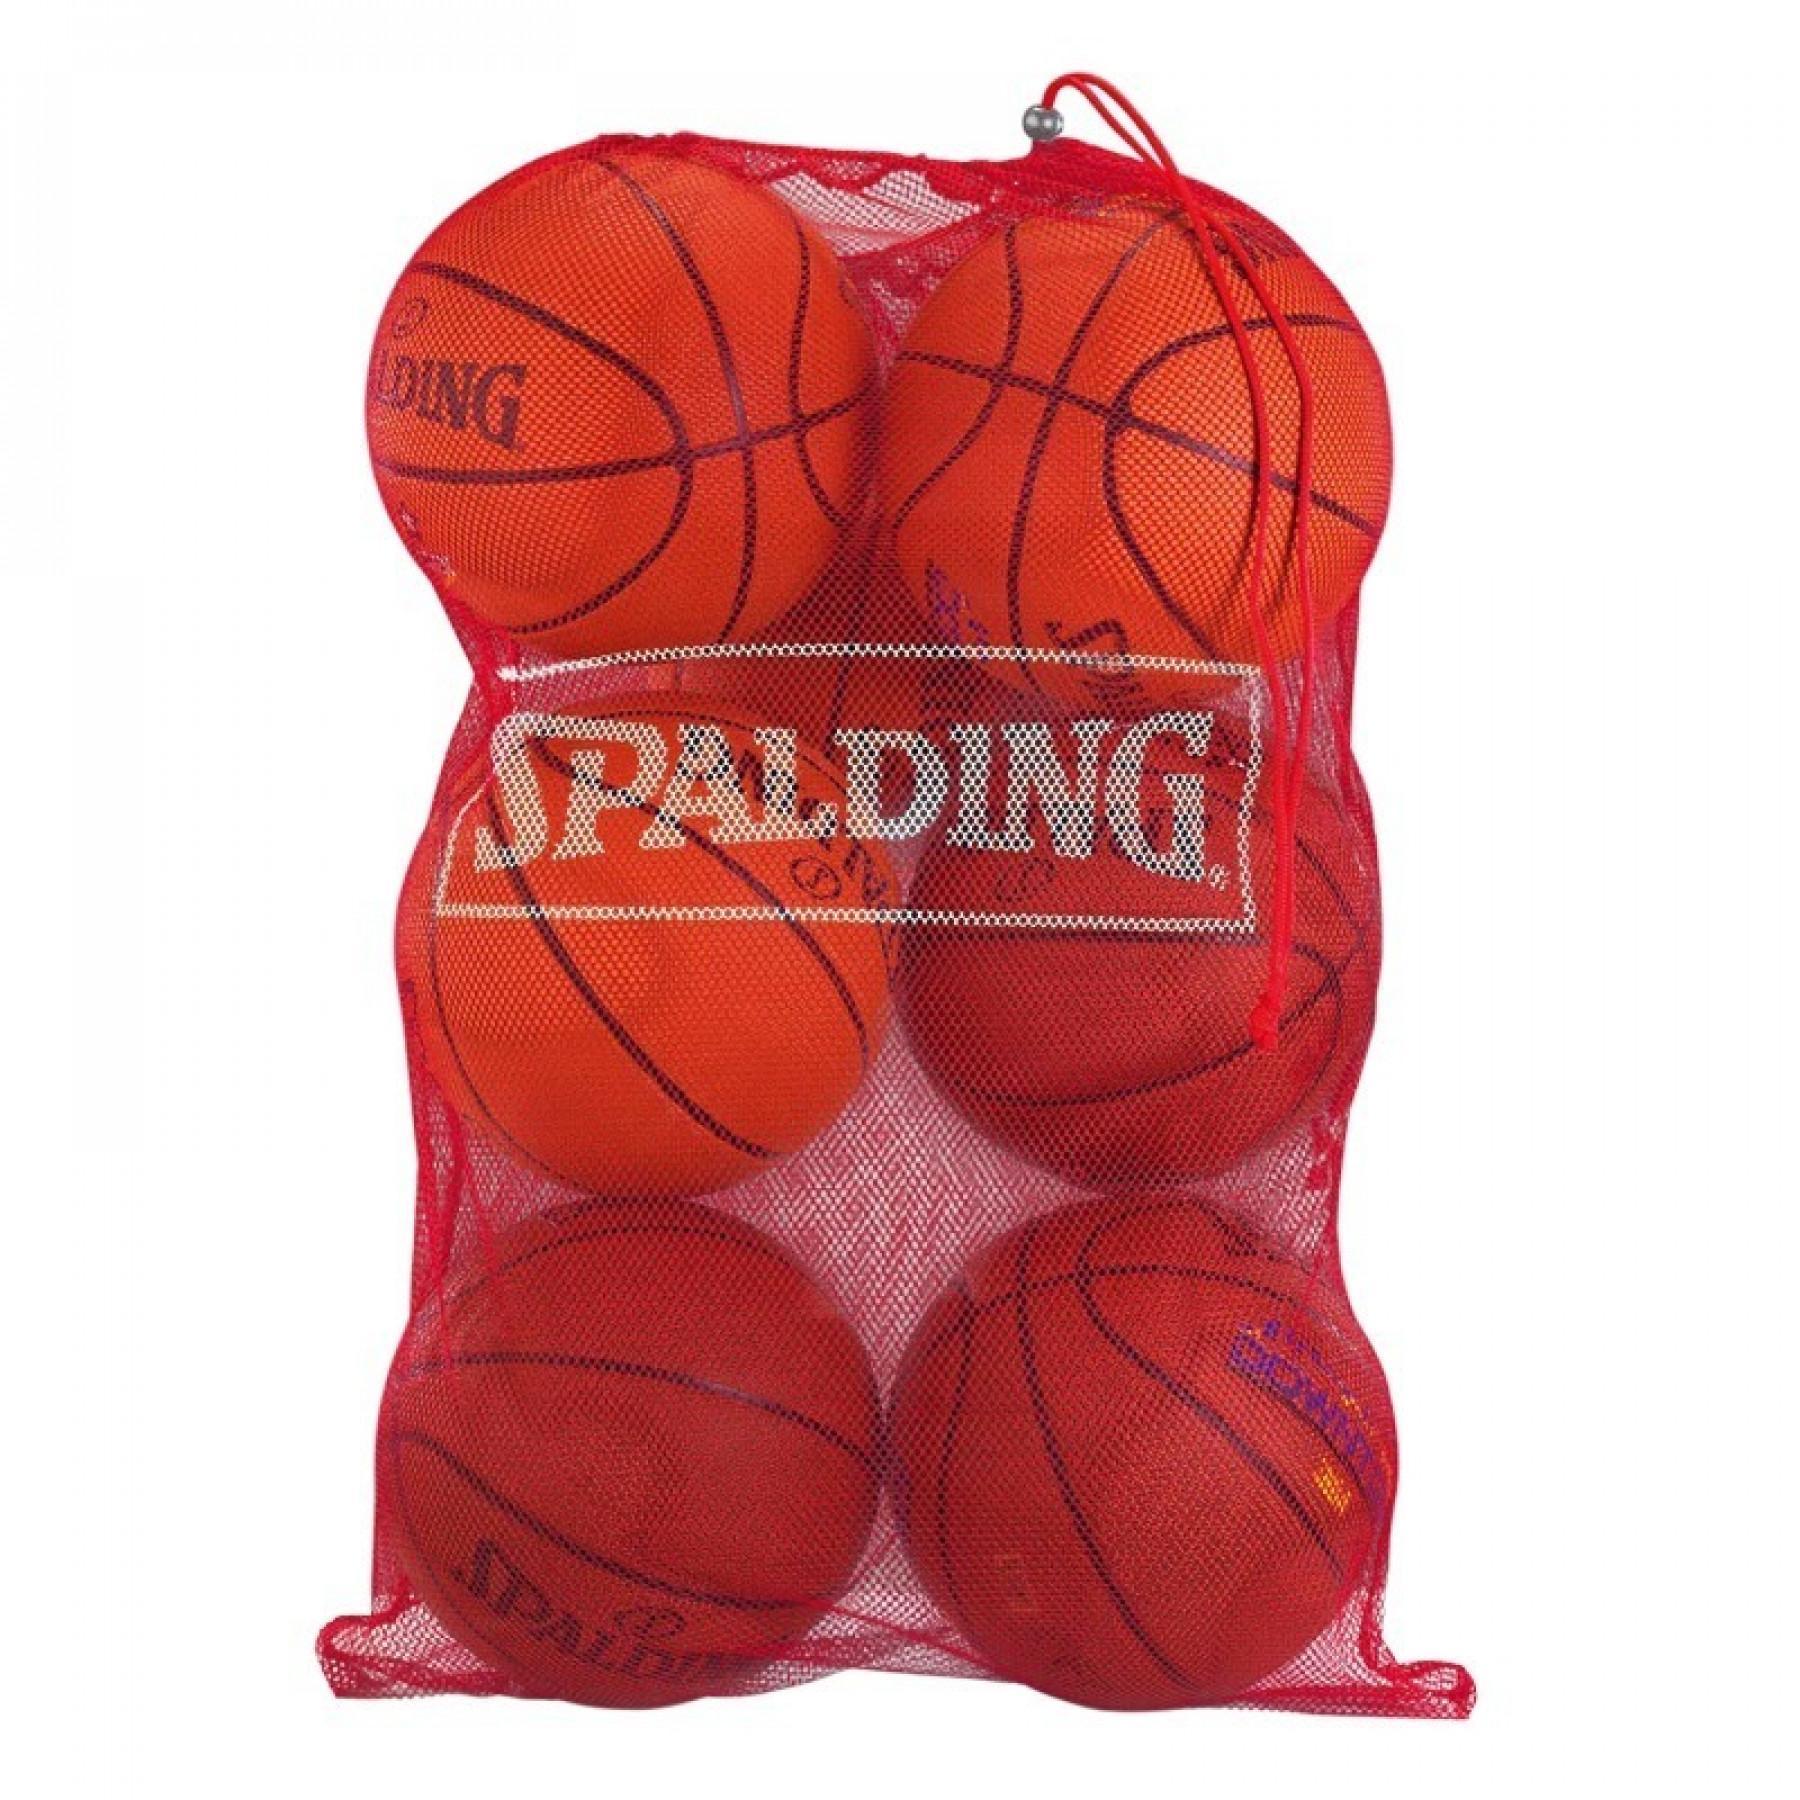 Torba na balony Spalding (7 ballons)